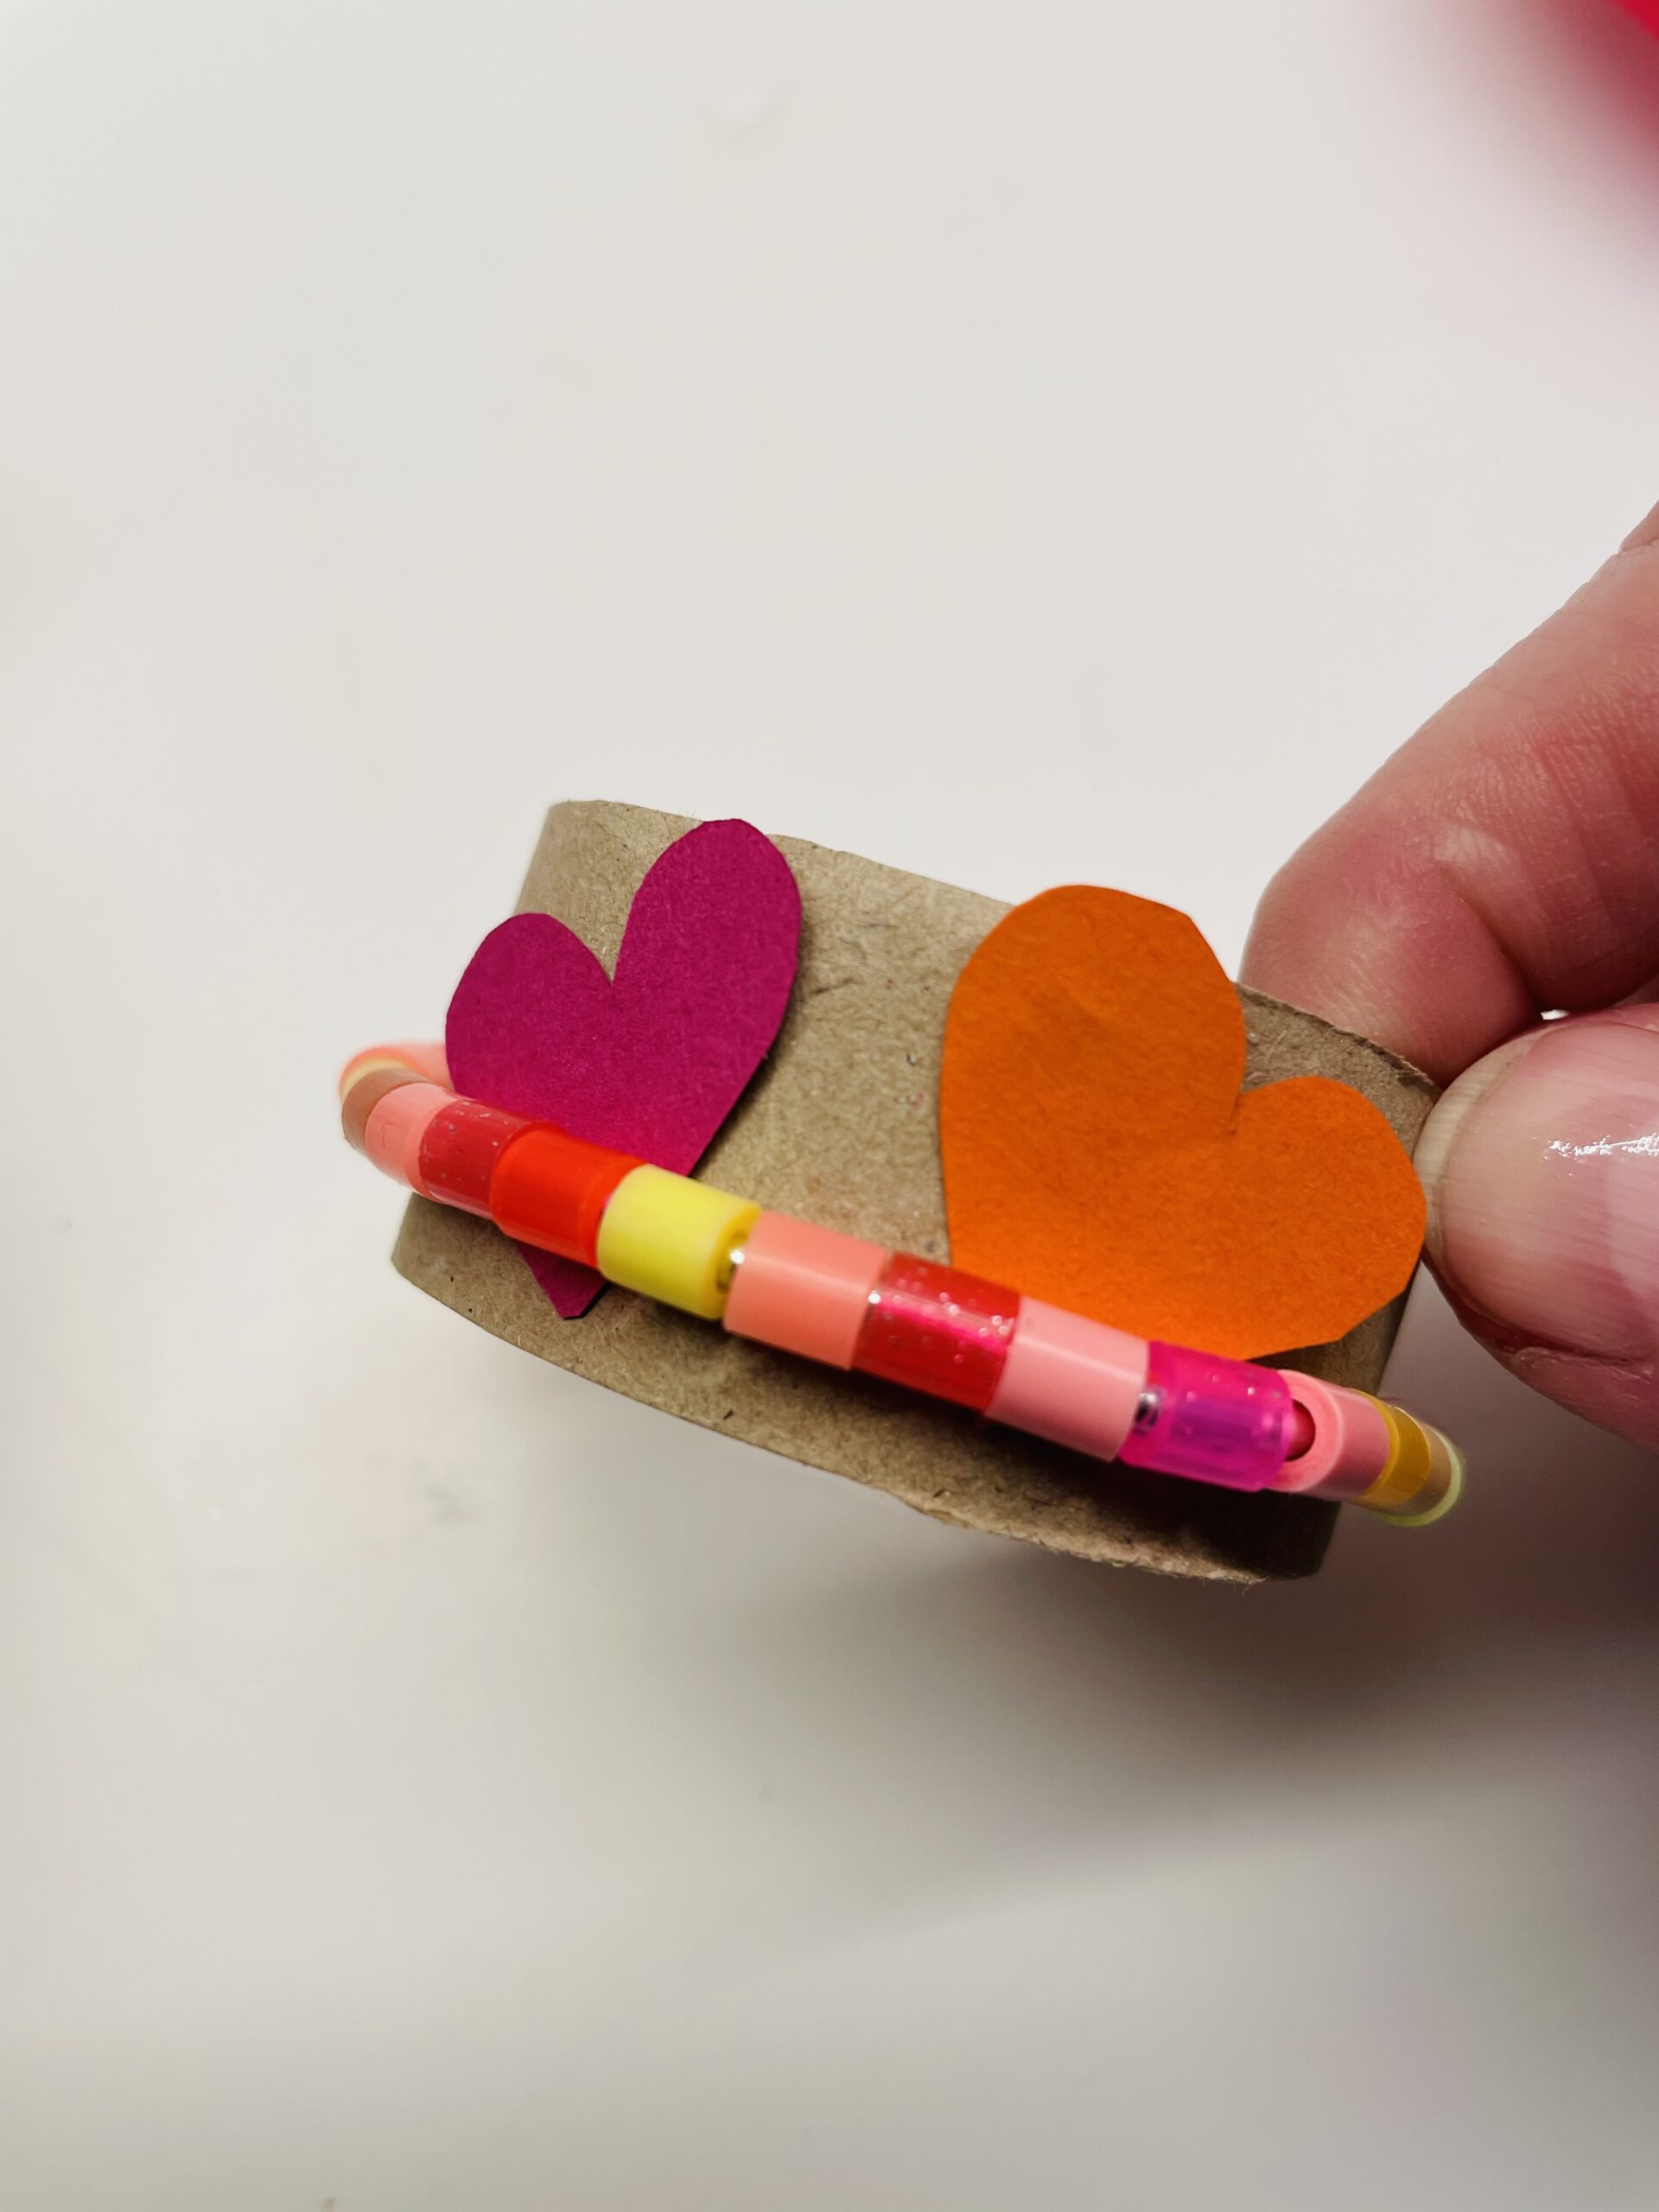 Bild zum Schritt 8 für das Bastel- und DIY-Abenteuer für Kinder: 'Anschließend legt ihr die Herzen zwischen Perlenring und Papprolle.'